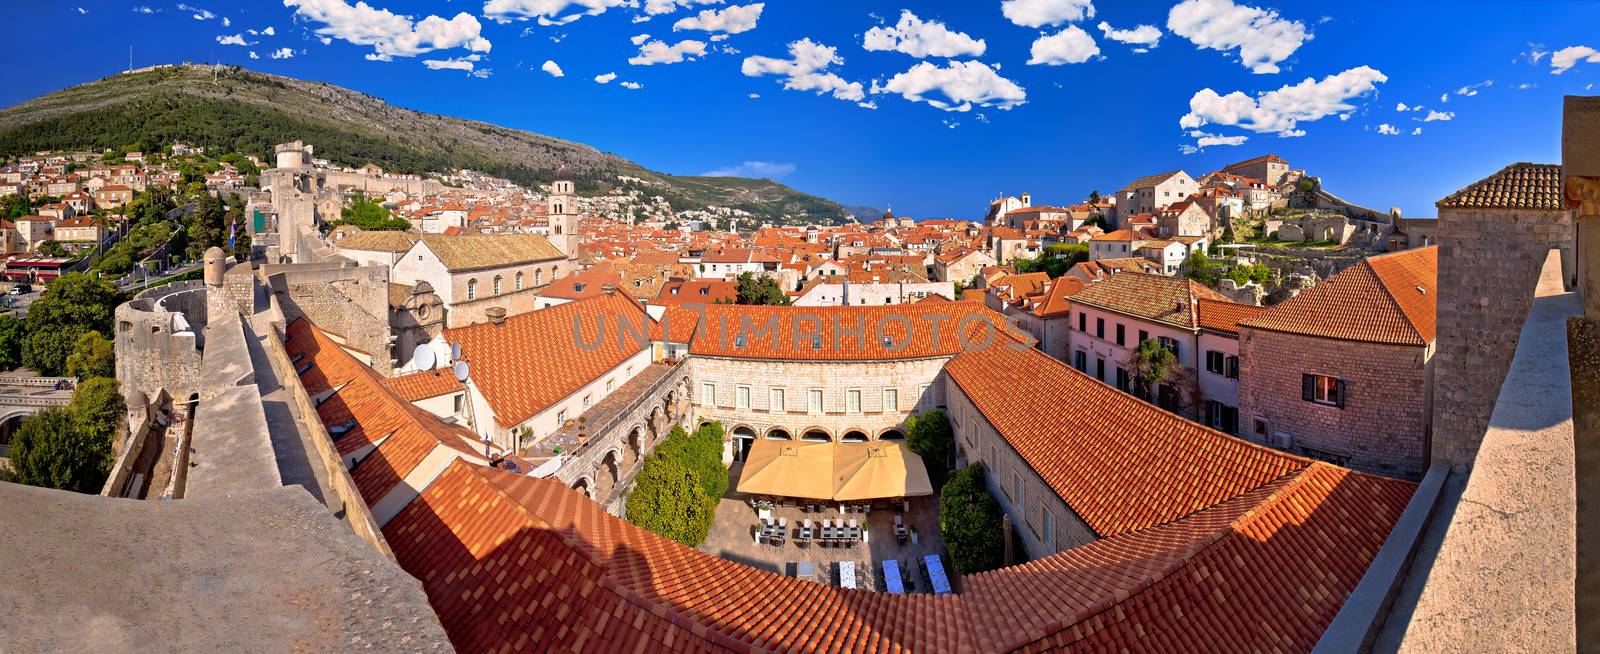 Historic town of Dubrovnik panoramic view from walls, Dalmatia region of Croatia